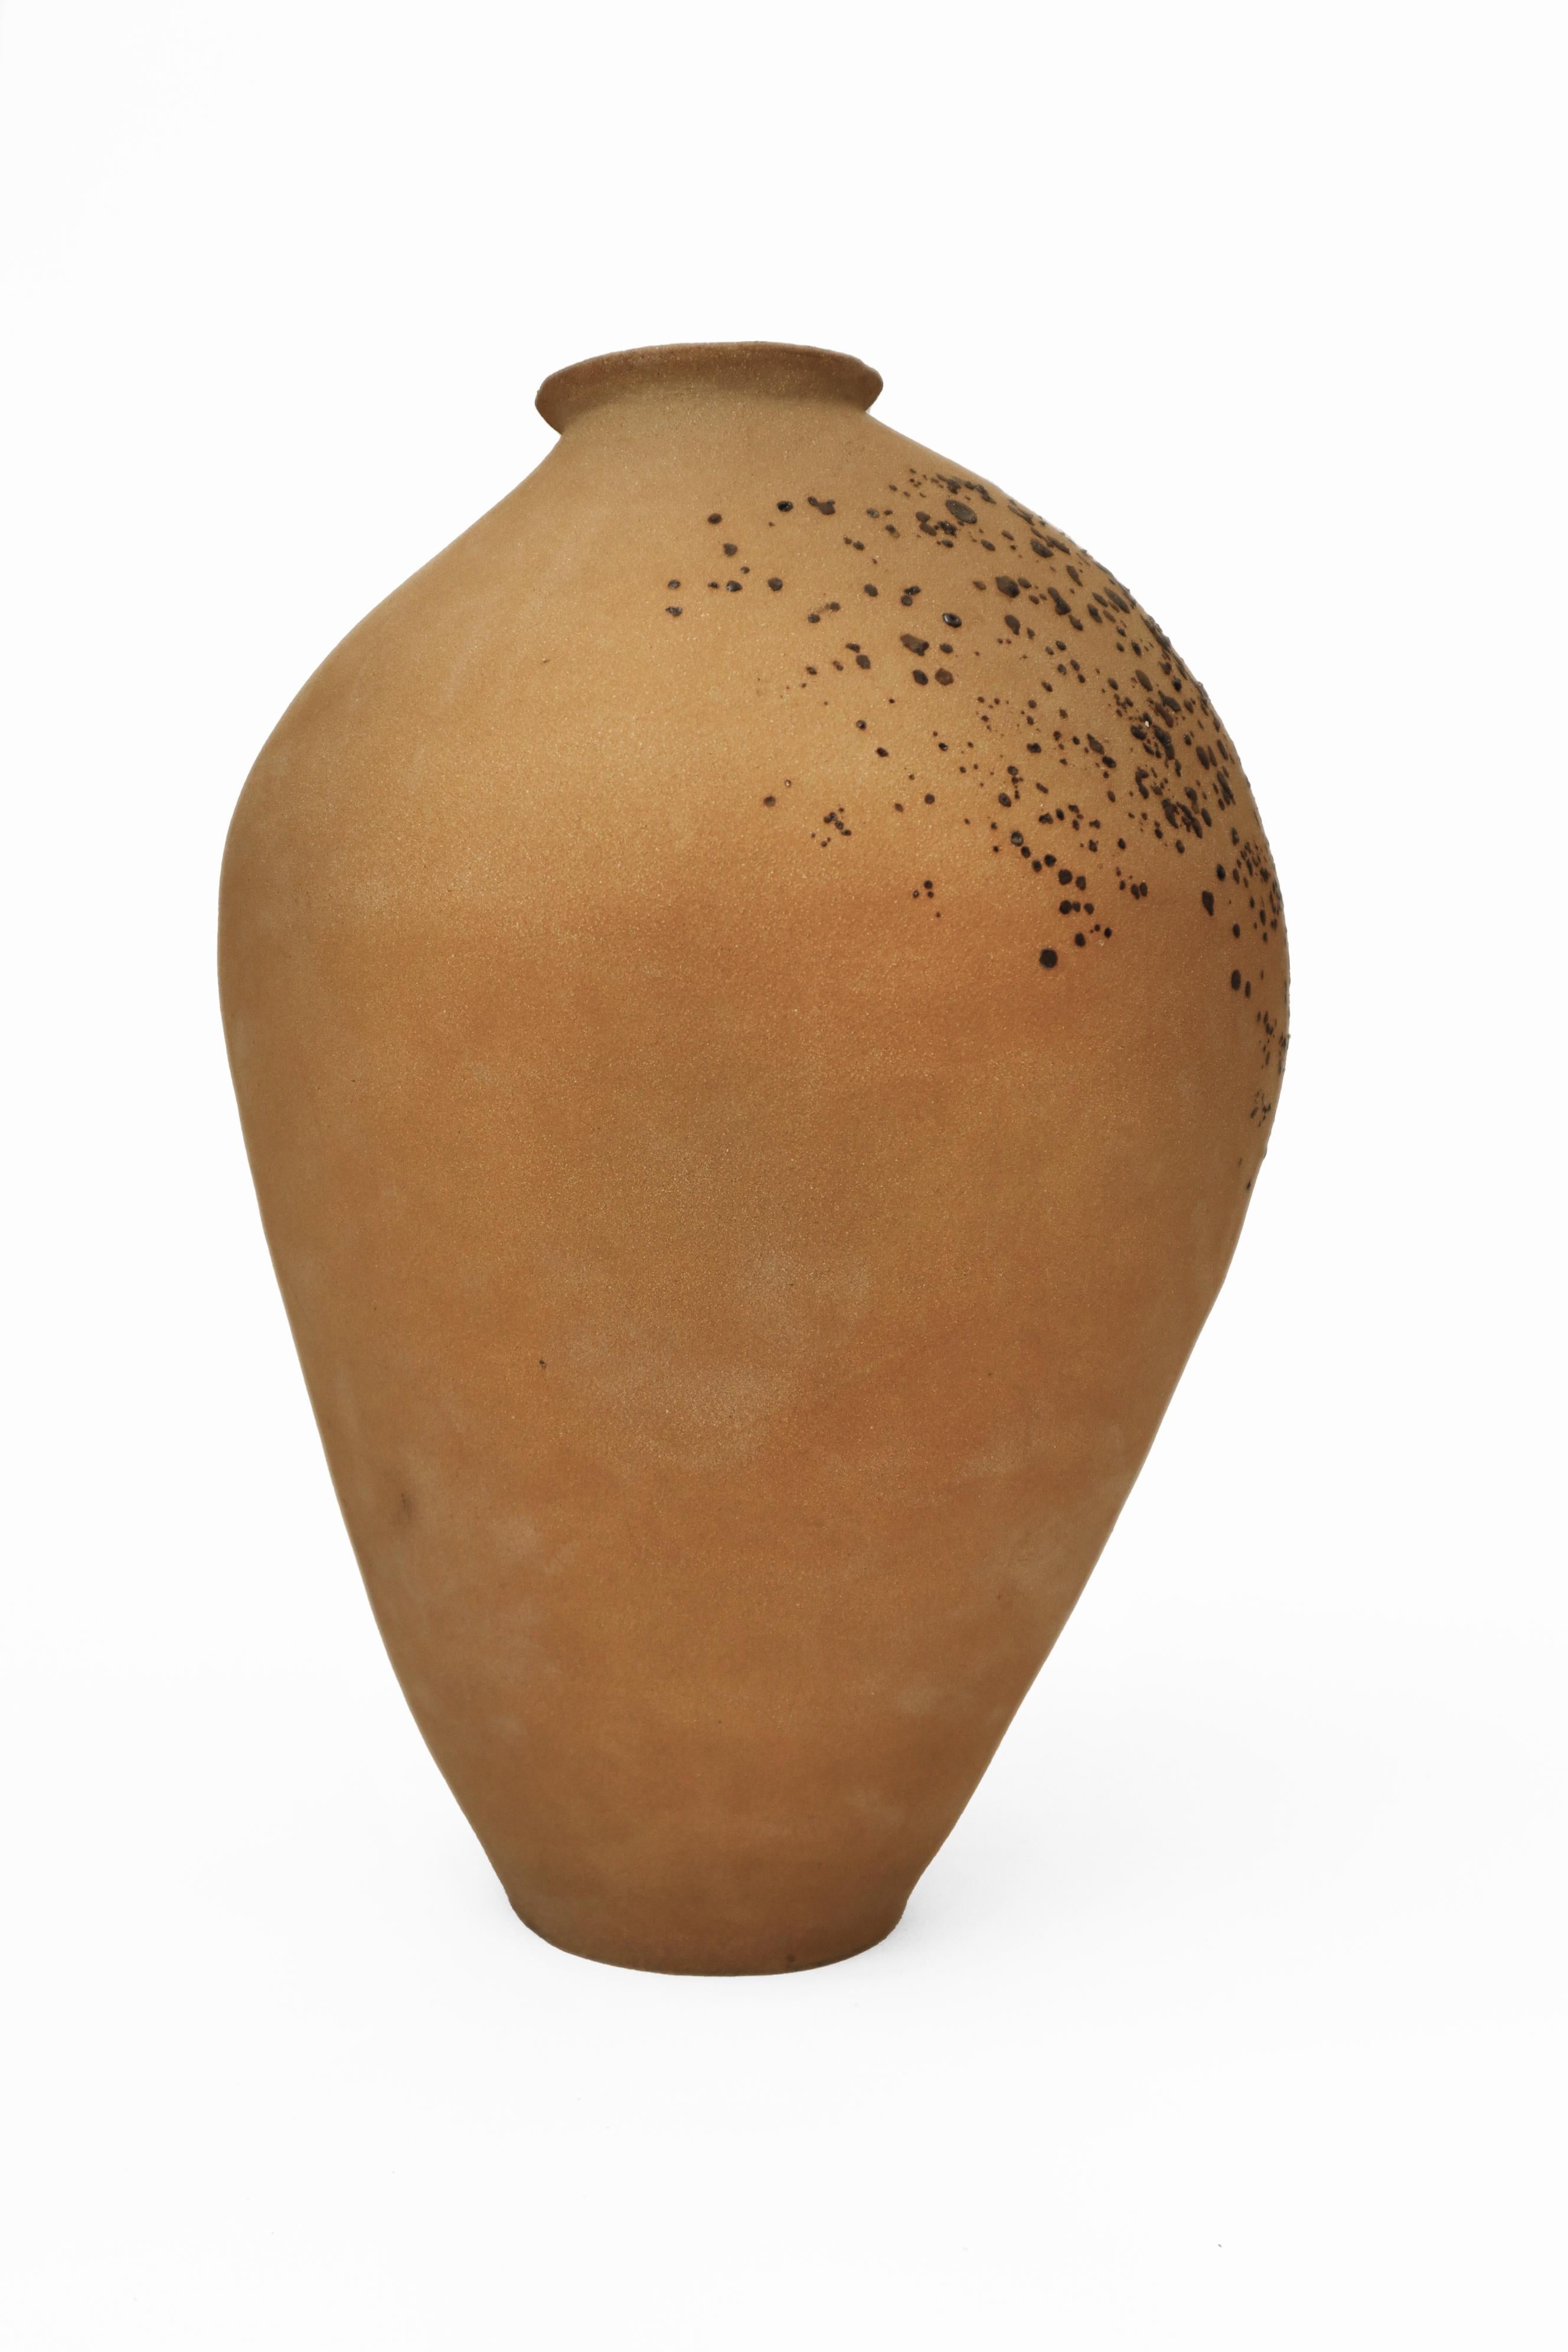 Other Stomata 14 Vase by Anna Karountzou For Sale